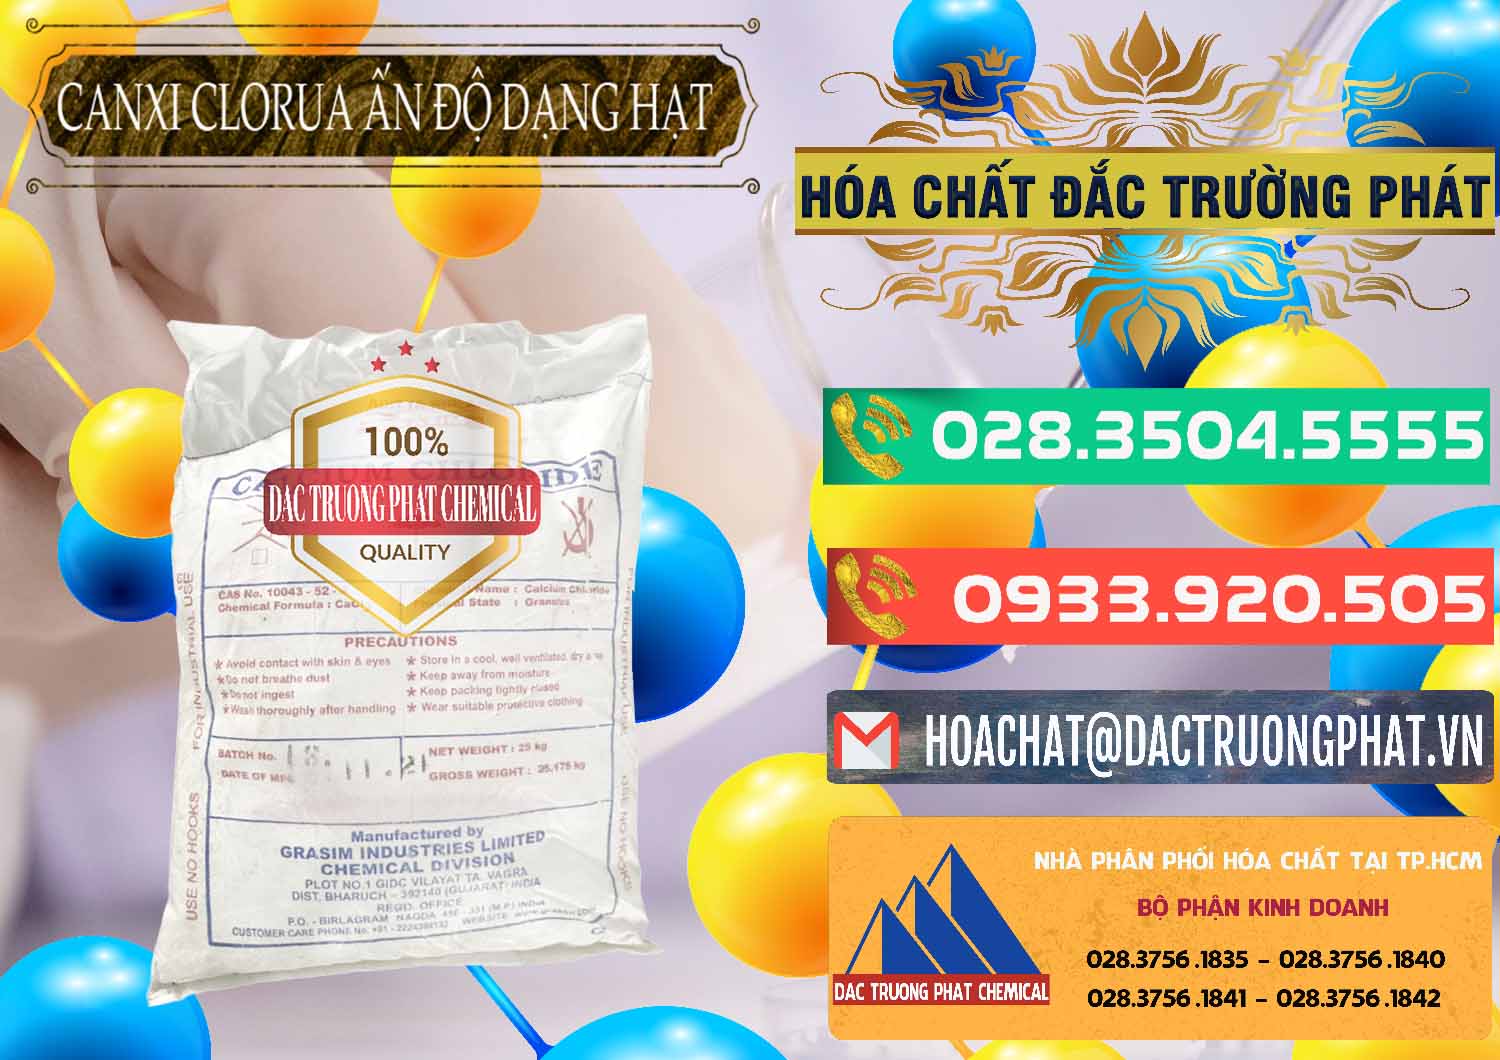 Nhà cung ứng _ bán CaCl2 – Canxi Clorua Dạng Hạt Aditya Birla Grasim Ấn Độ India - 0418 - Cty chuyên phân phối _ nhập khẩu hóa chất tại TP.HCM - congtyhoachat.com.vn